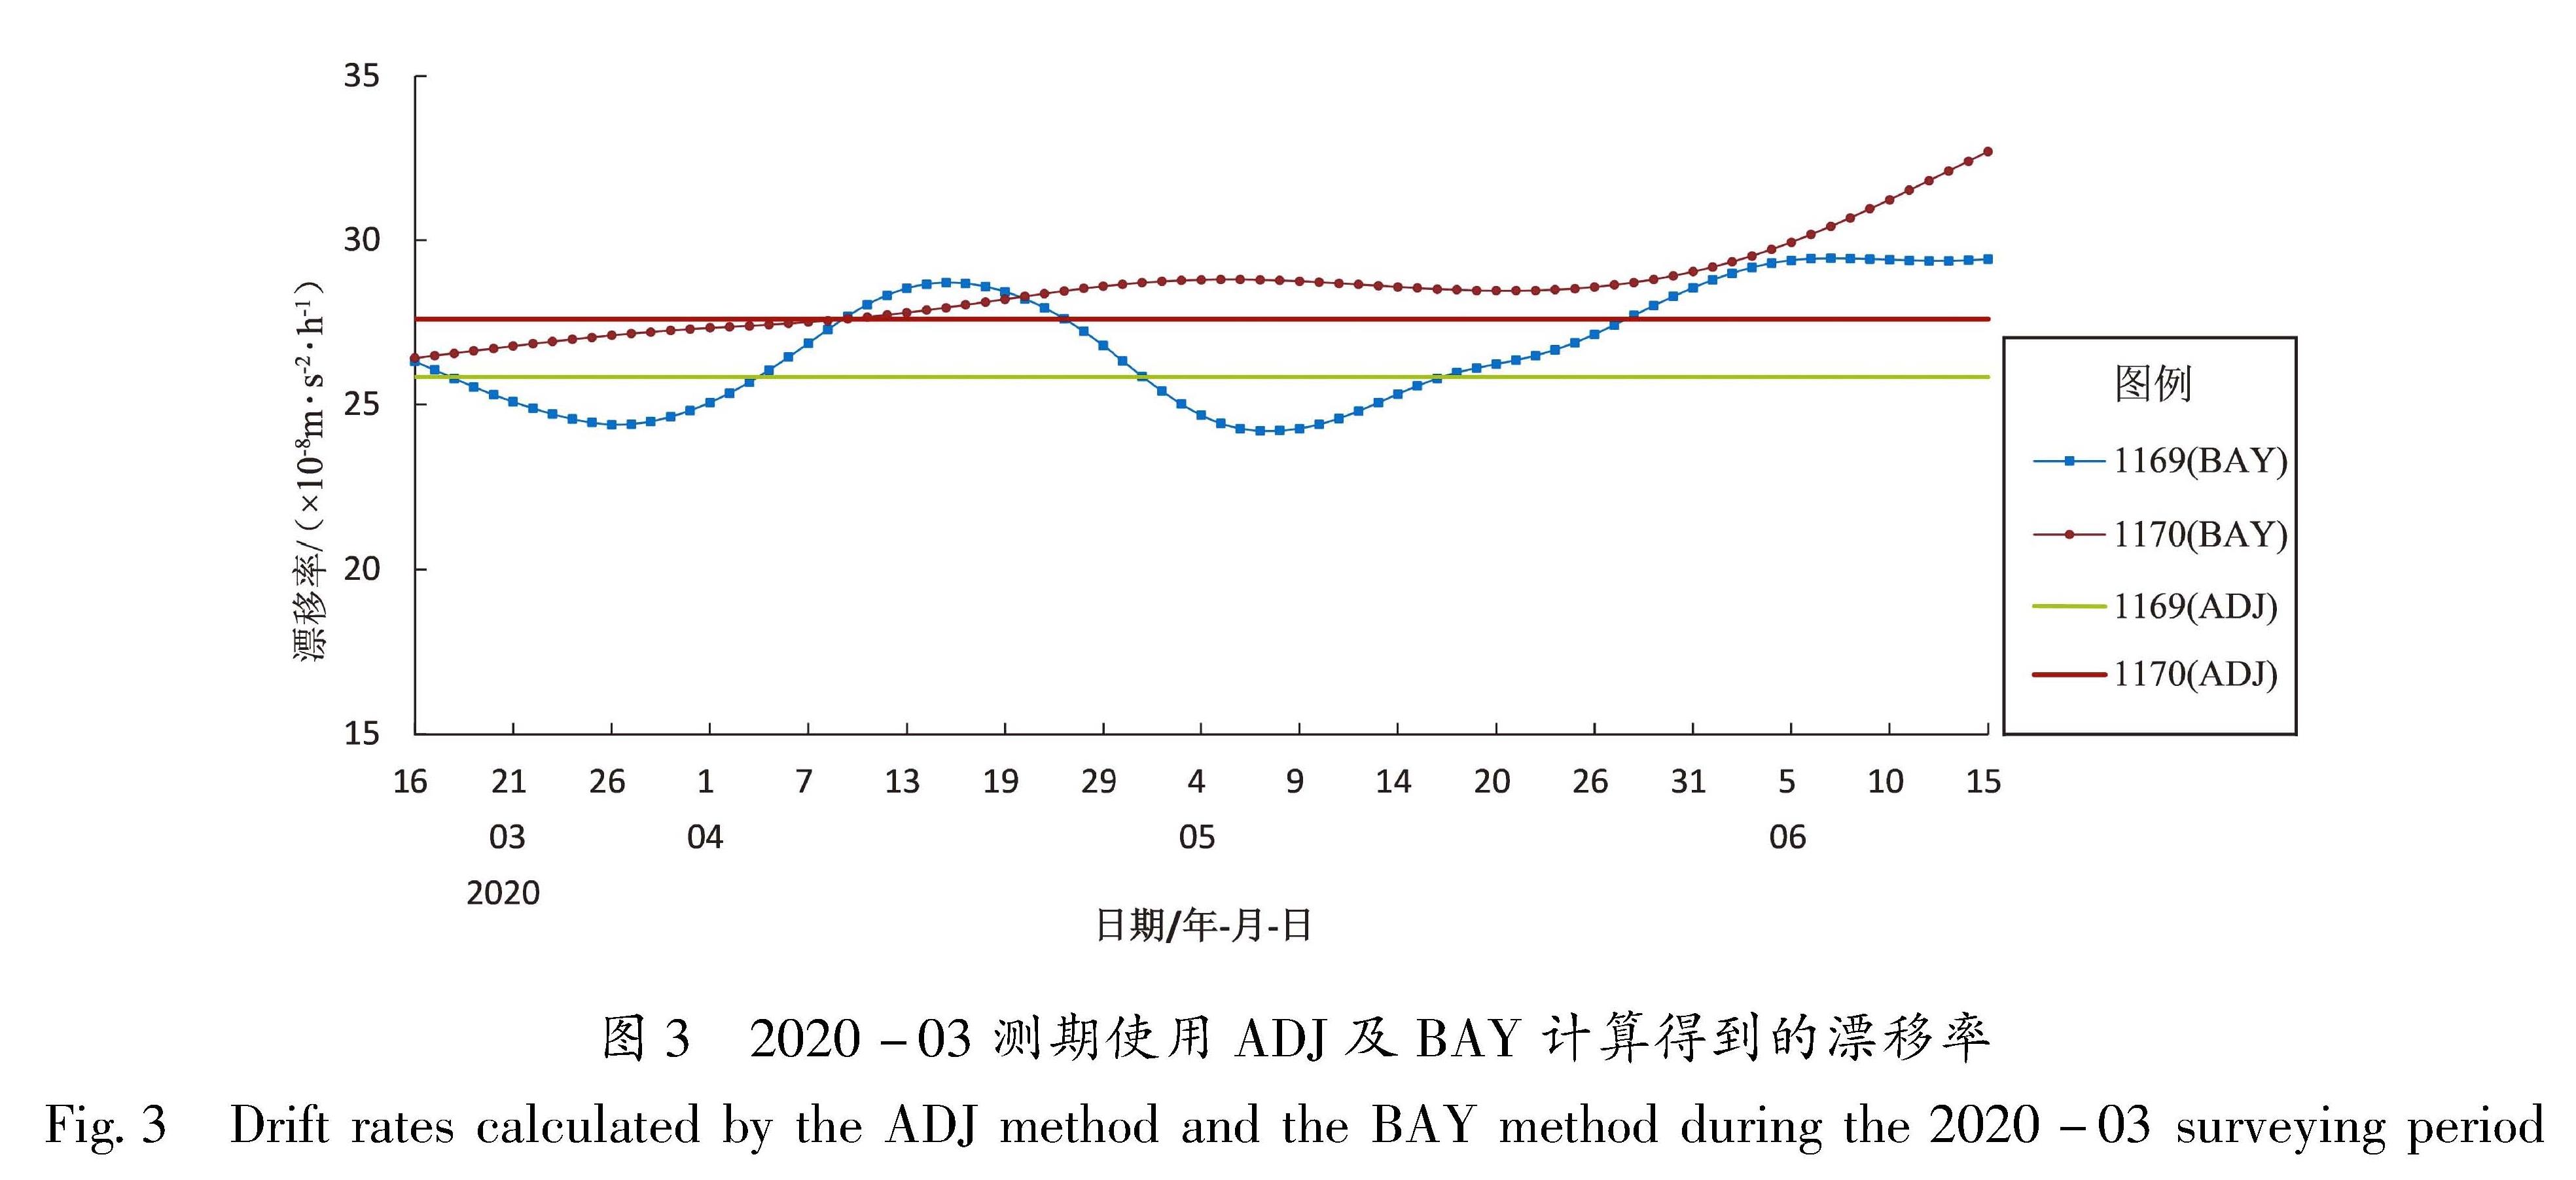 图3 2020-03测期使用ADJ及BAY计算得到的漂移率<br/>Fig.3 Drift rates calculated by the ADJ method and the BAY method during the 2020-03 surveying period